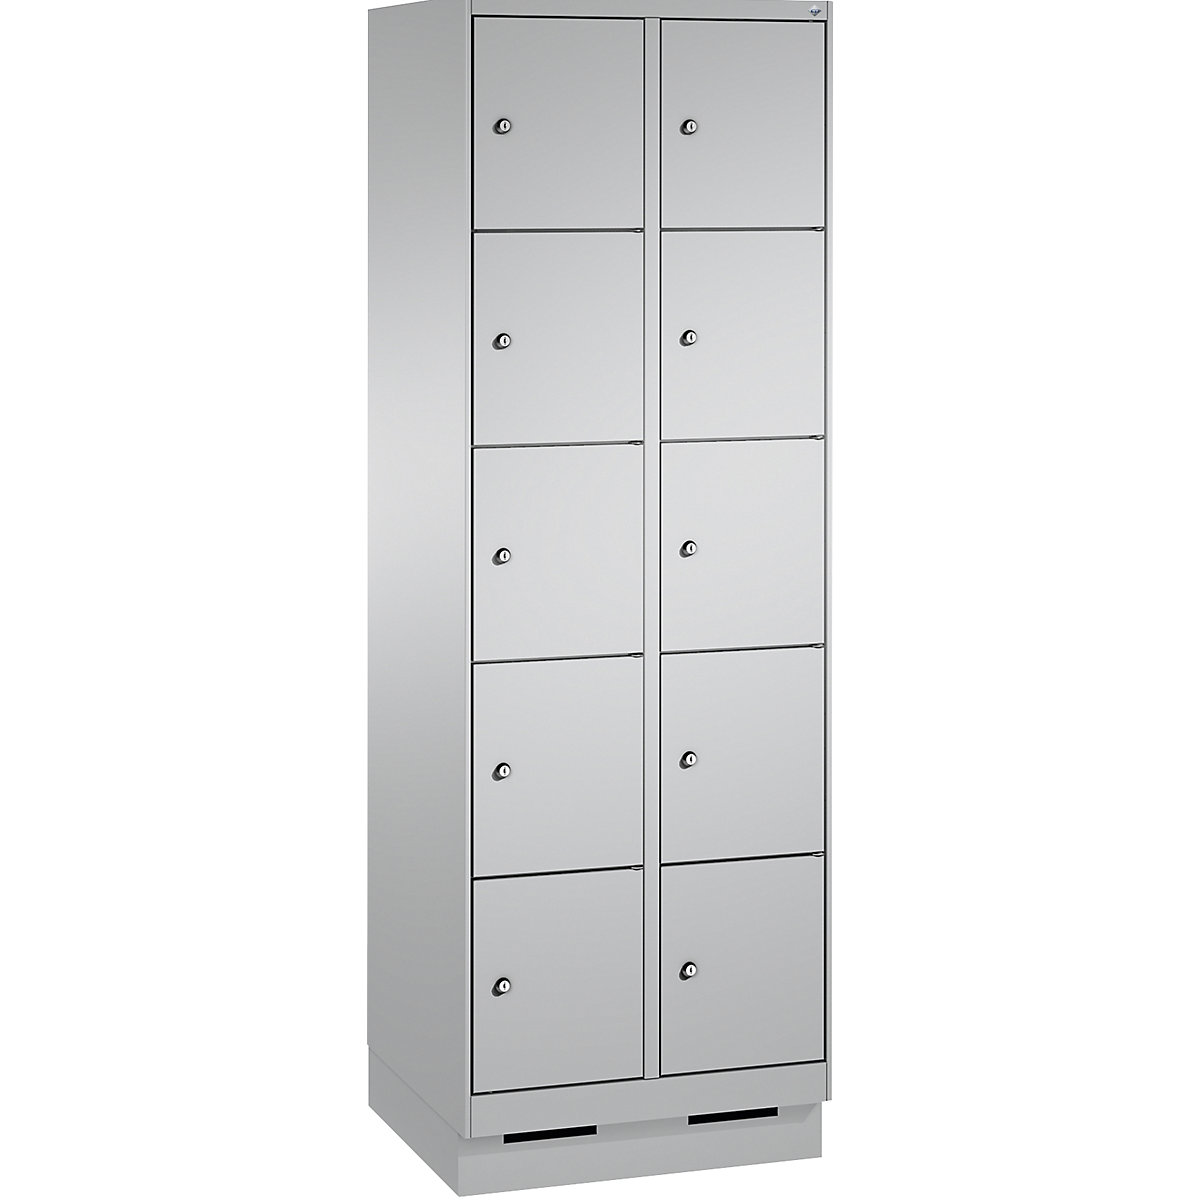 Armoire à casiers sur socle EVOLO – C+P, 2 compartiments, 5 casiers chacun, largeur compartiments 300 mm, aluminium / aluminium-15